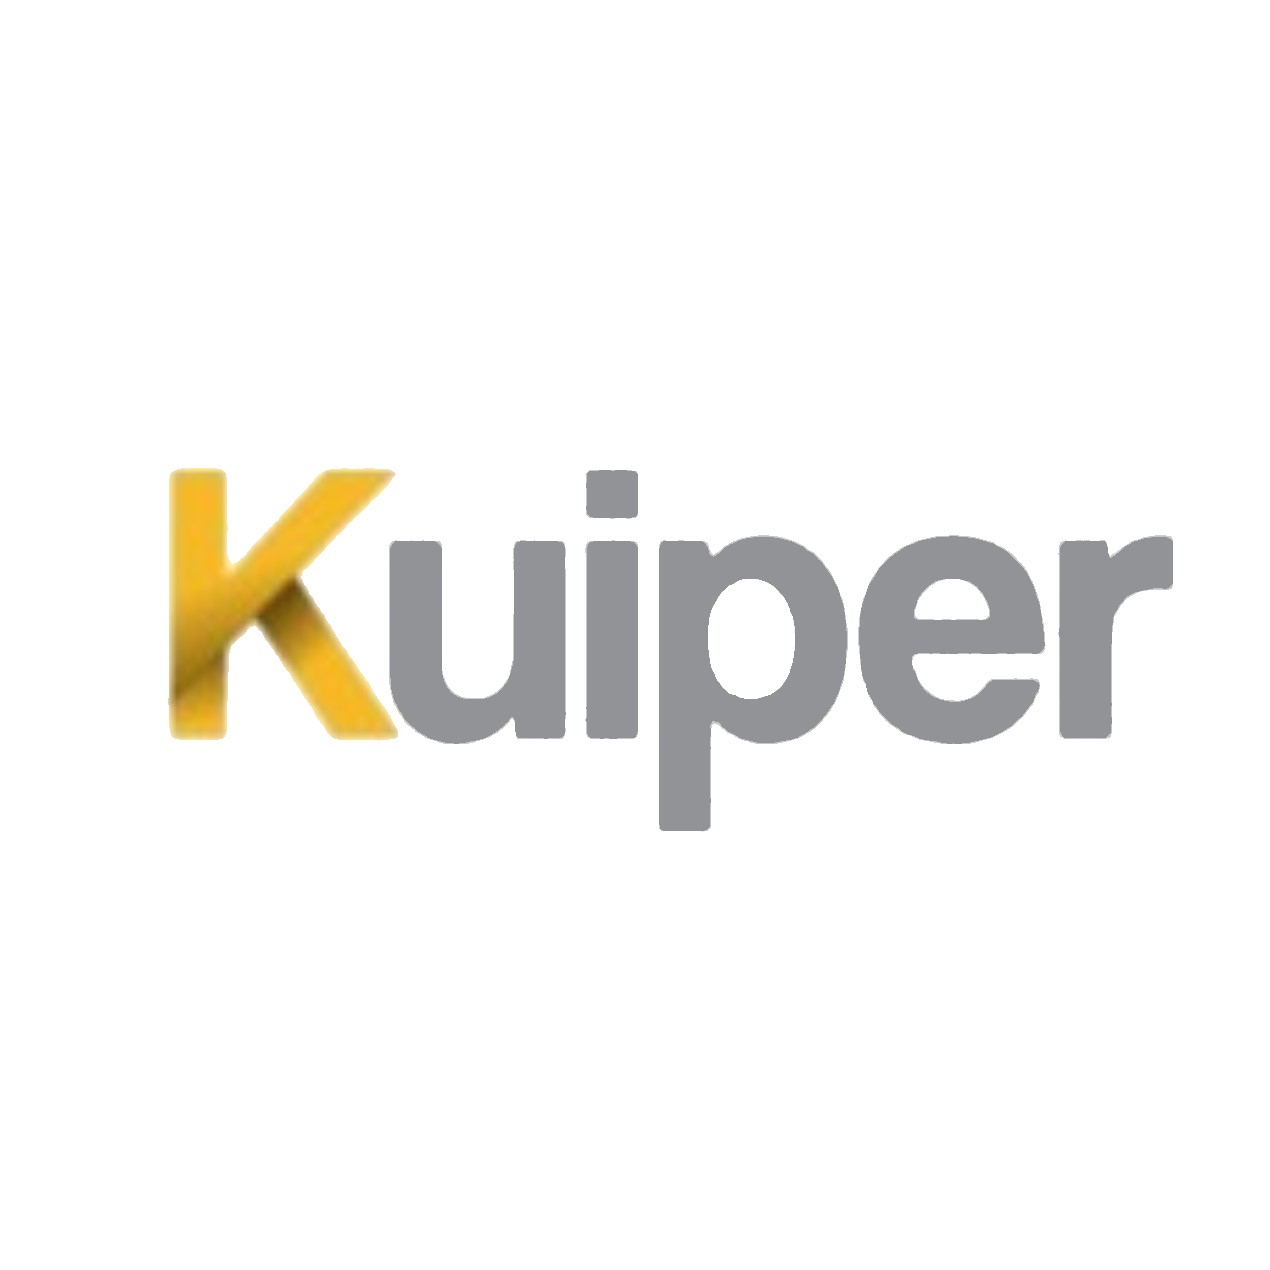 Kuiper Group